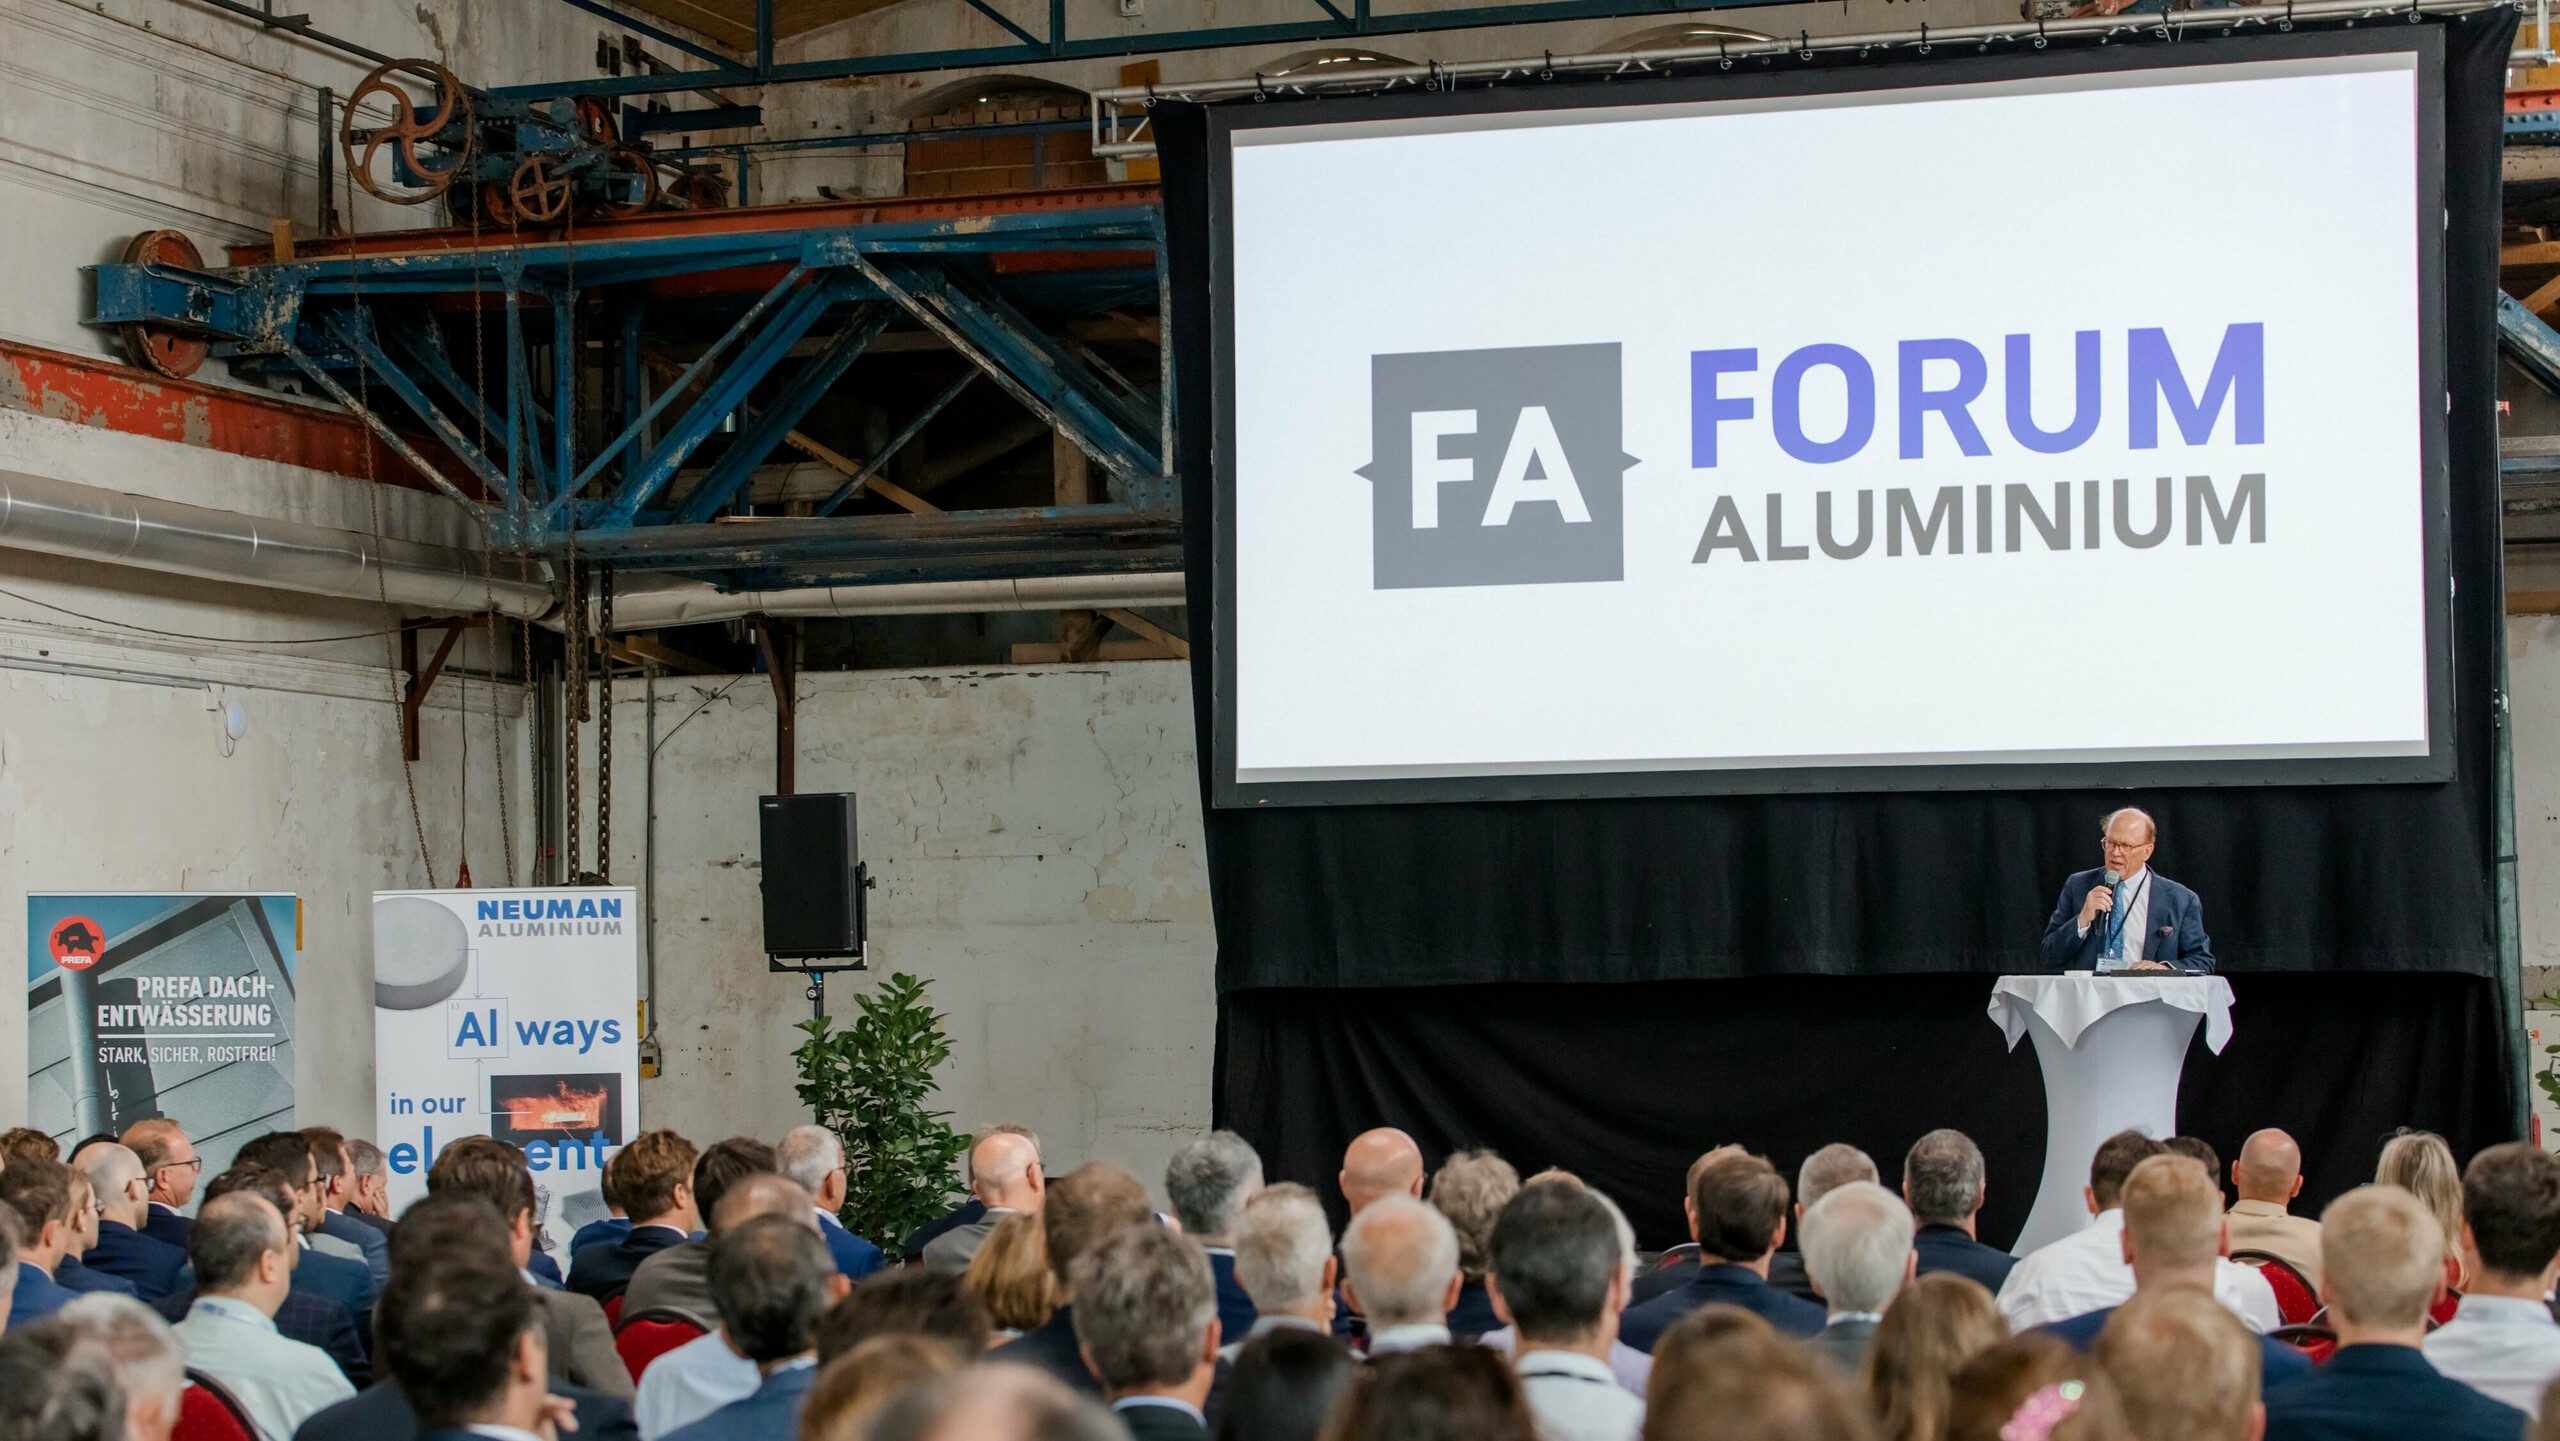 Bild einer Präsentation, auf der Leinwand ist "Forum Aluminium" abgebildet.